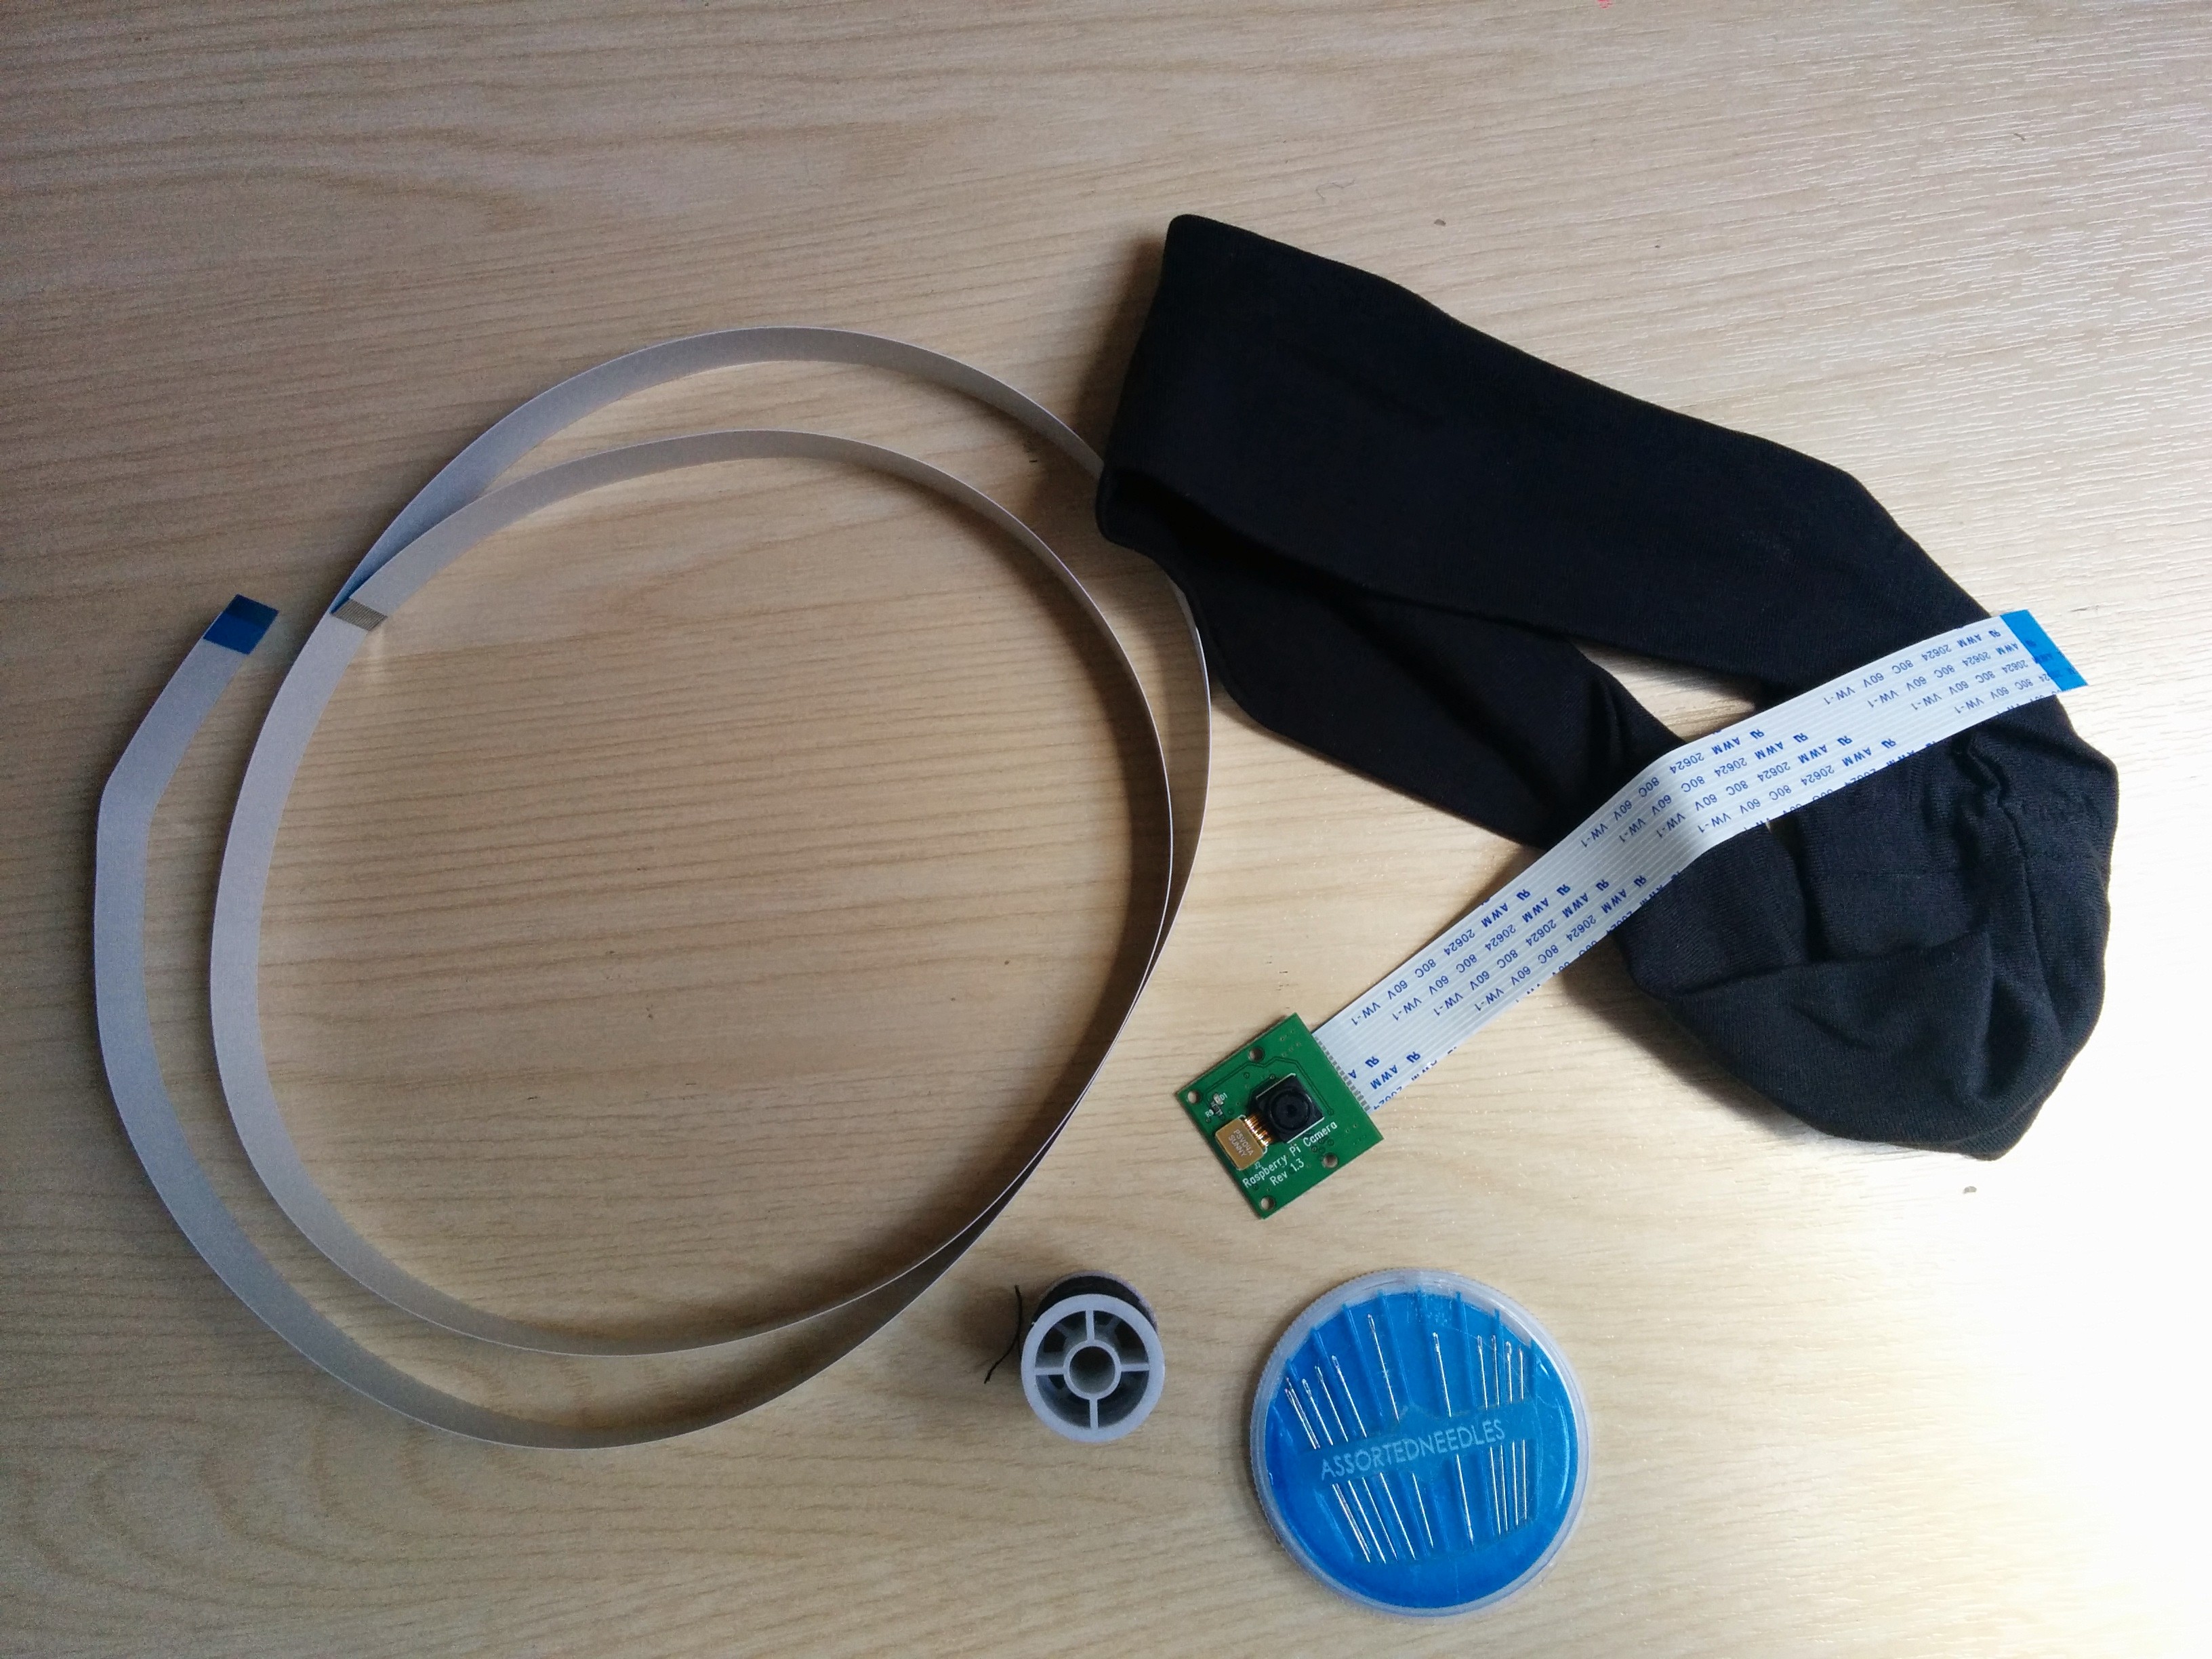 Needles, thread, a Pi Camera and a headband